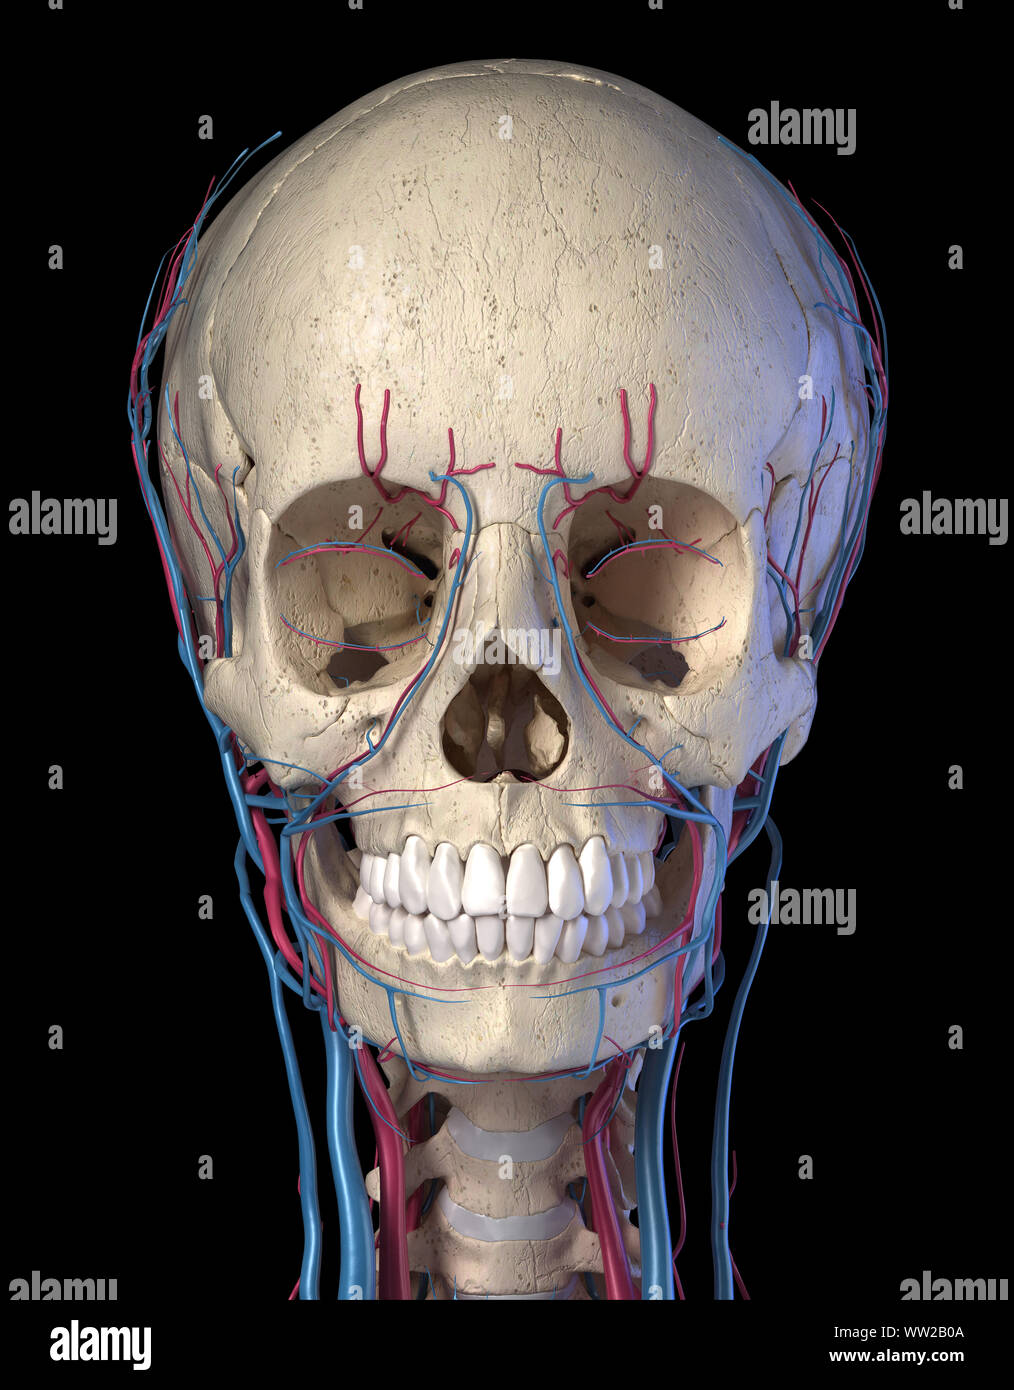 Gefäßsystem des menschlichen Kopf, von vorne betrachtet. Computer 3D Rendering Artwork. Auf schwarzem Hintergrund. Stockfoto